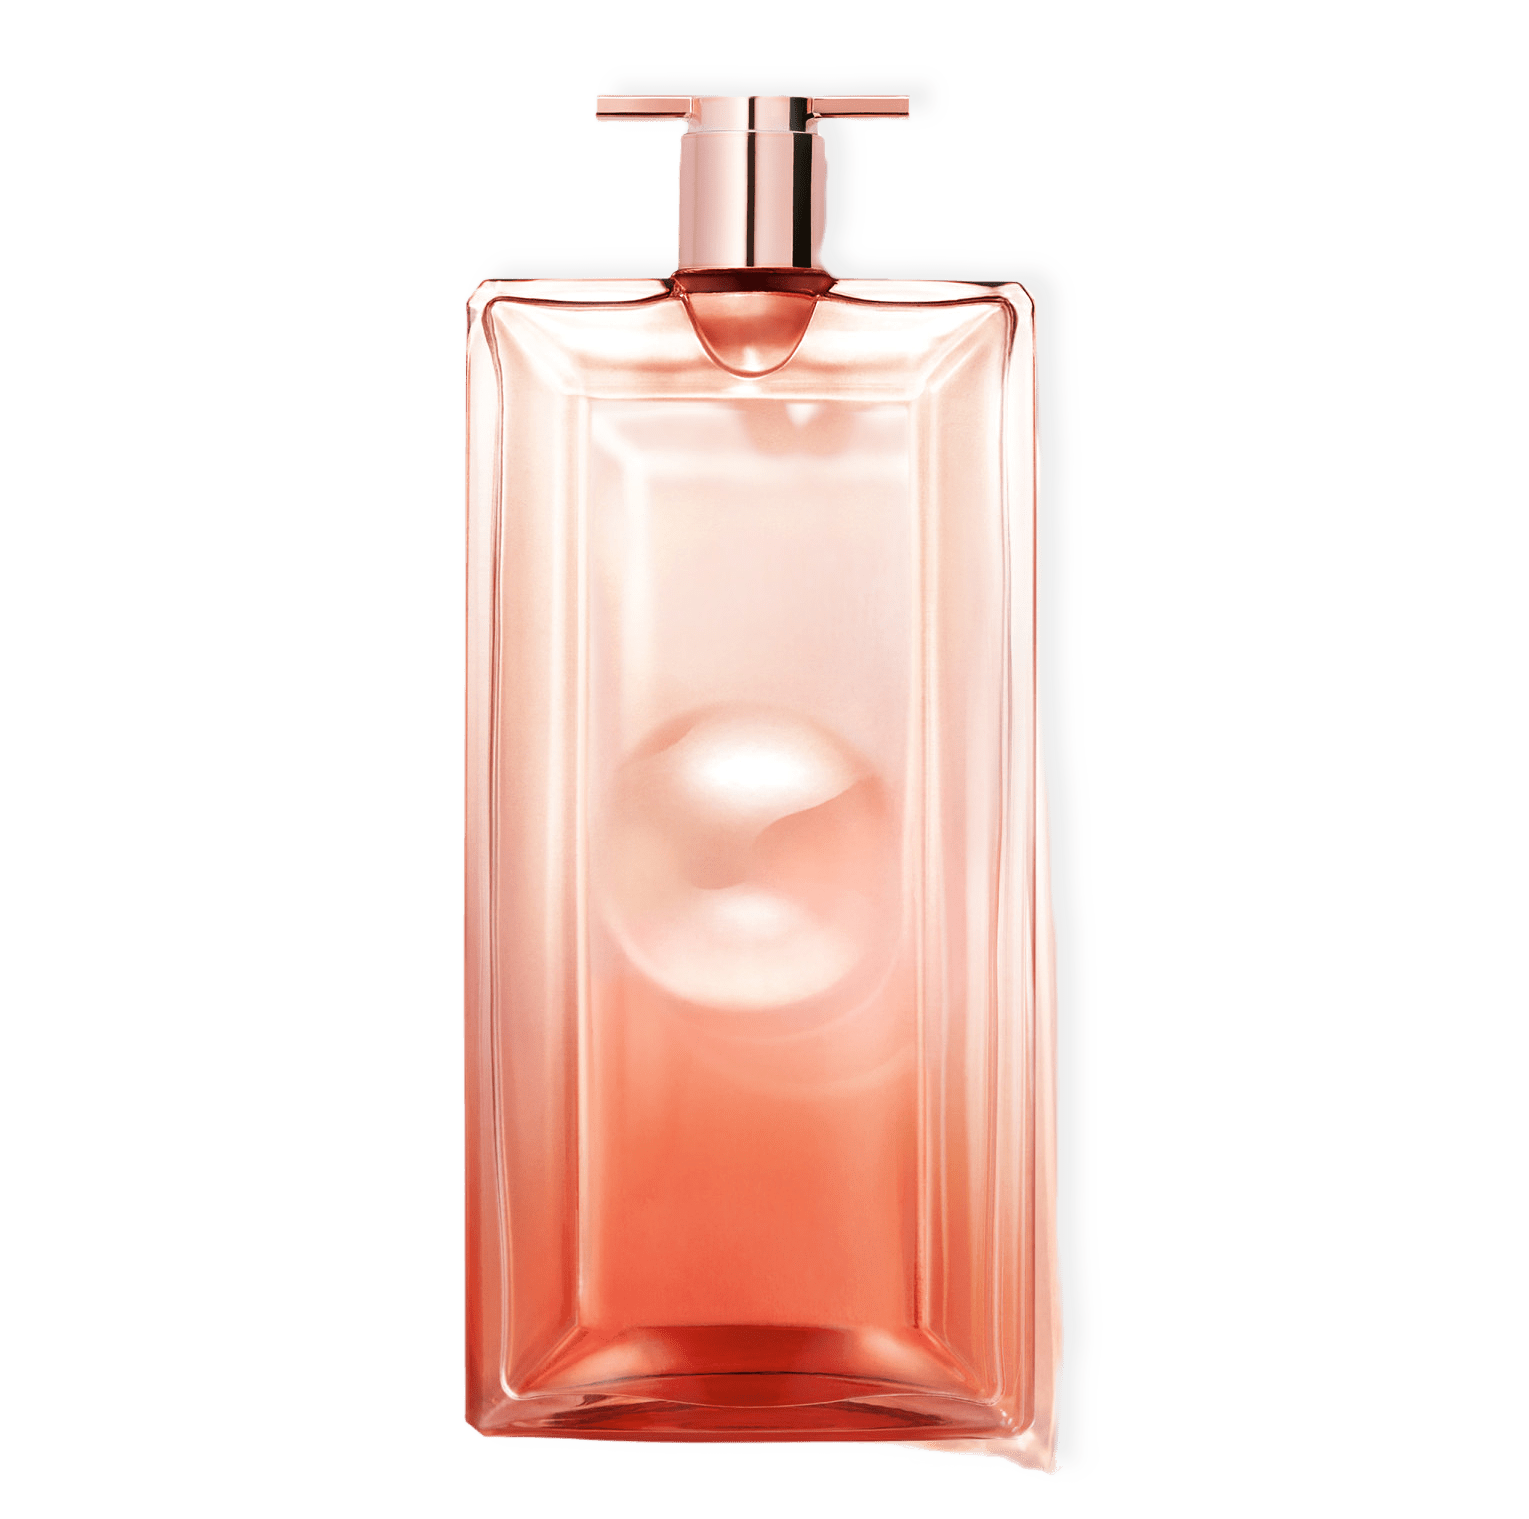 Idôle Now Eau de Parfum från Lancôme